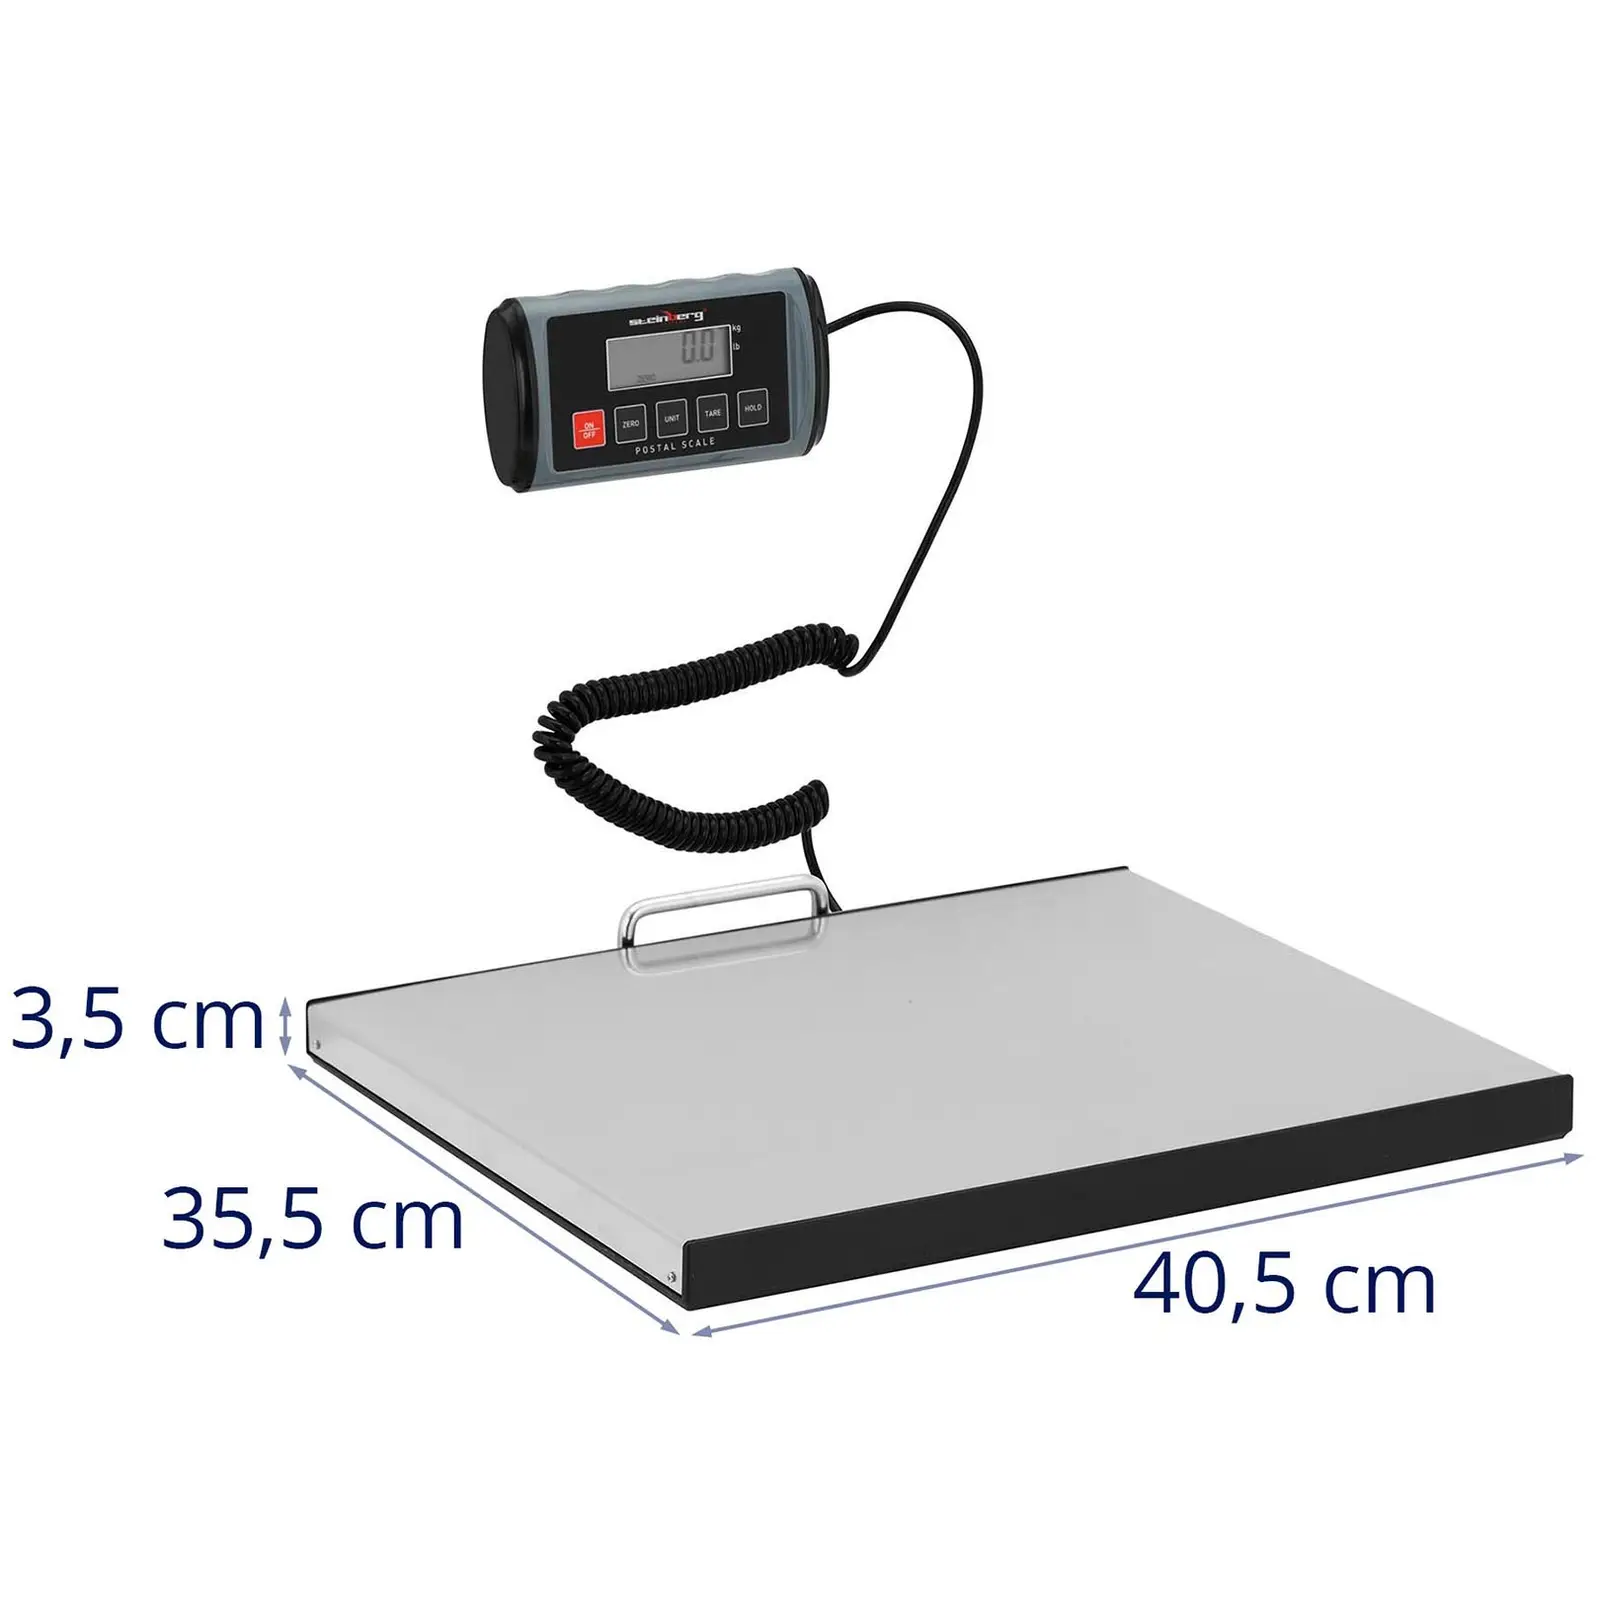 Pèse-colis - 100 kg / 0,05 kg - 35,5 x 40,5 cm - Écran LCD externe